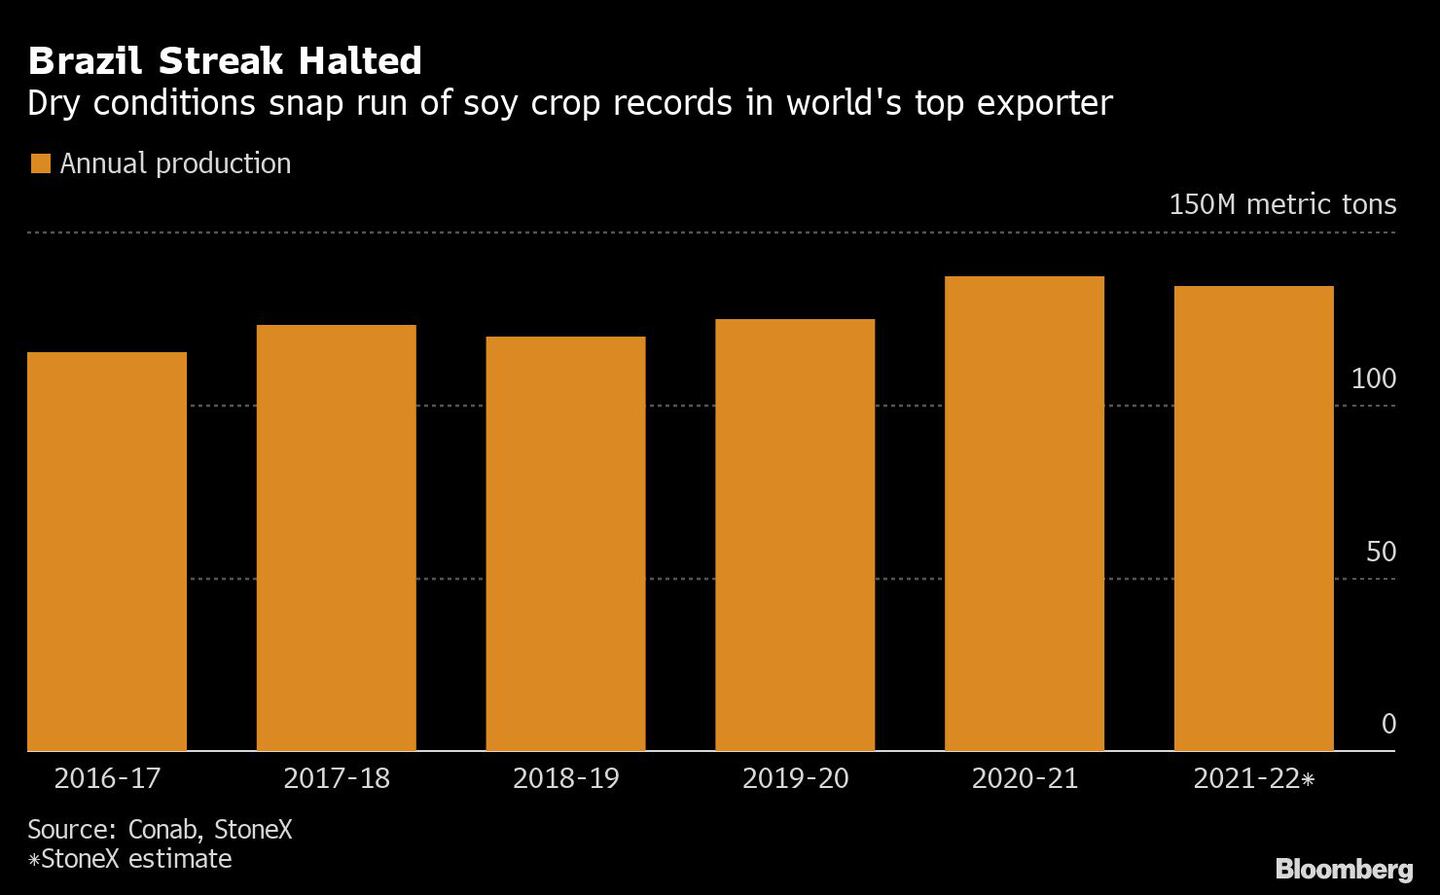 Las condiciones de sequía interrumpen la racha de cosechas de soja en el principal exportador mundialdfd